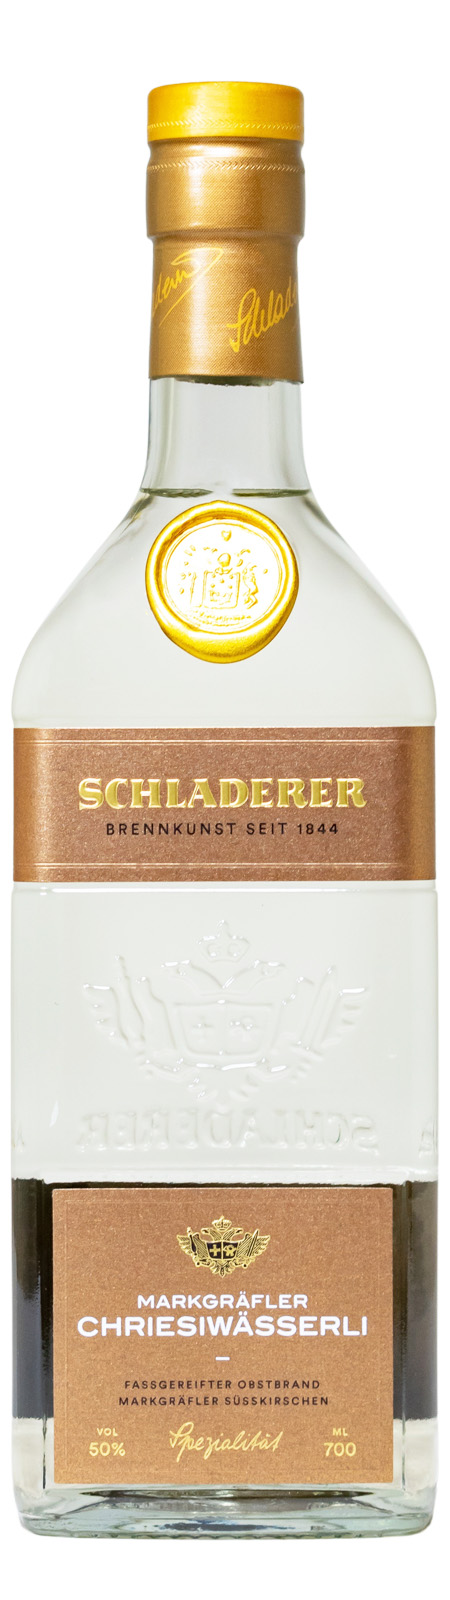 Schladerer Markgräfler Chriesiwässerli - 0,7L 50% vol